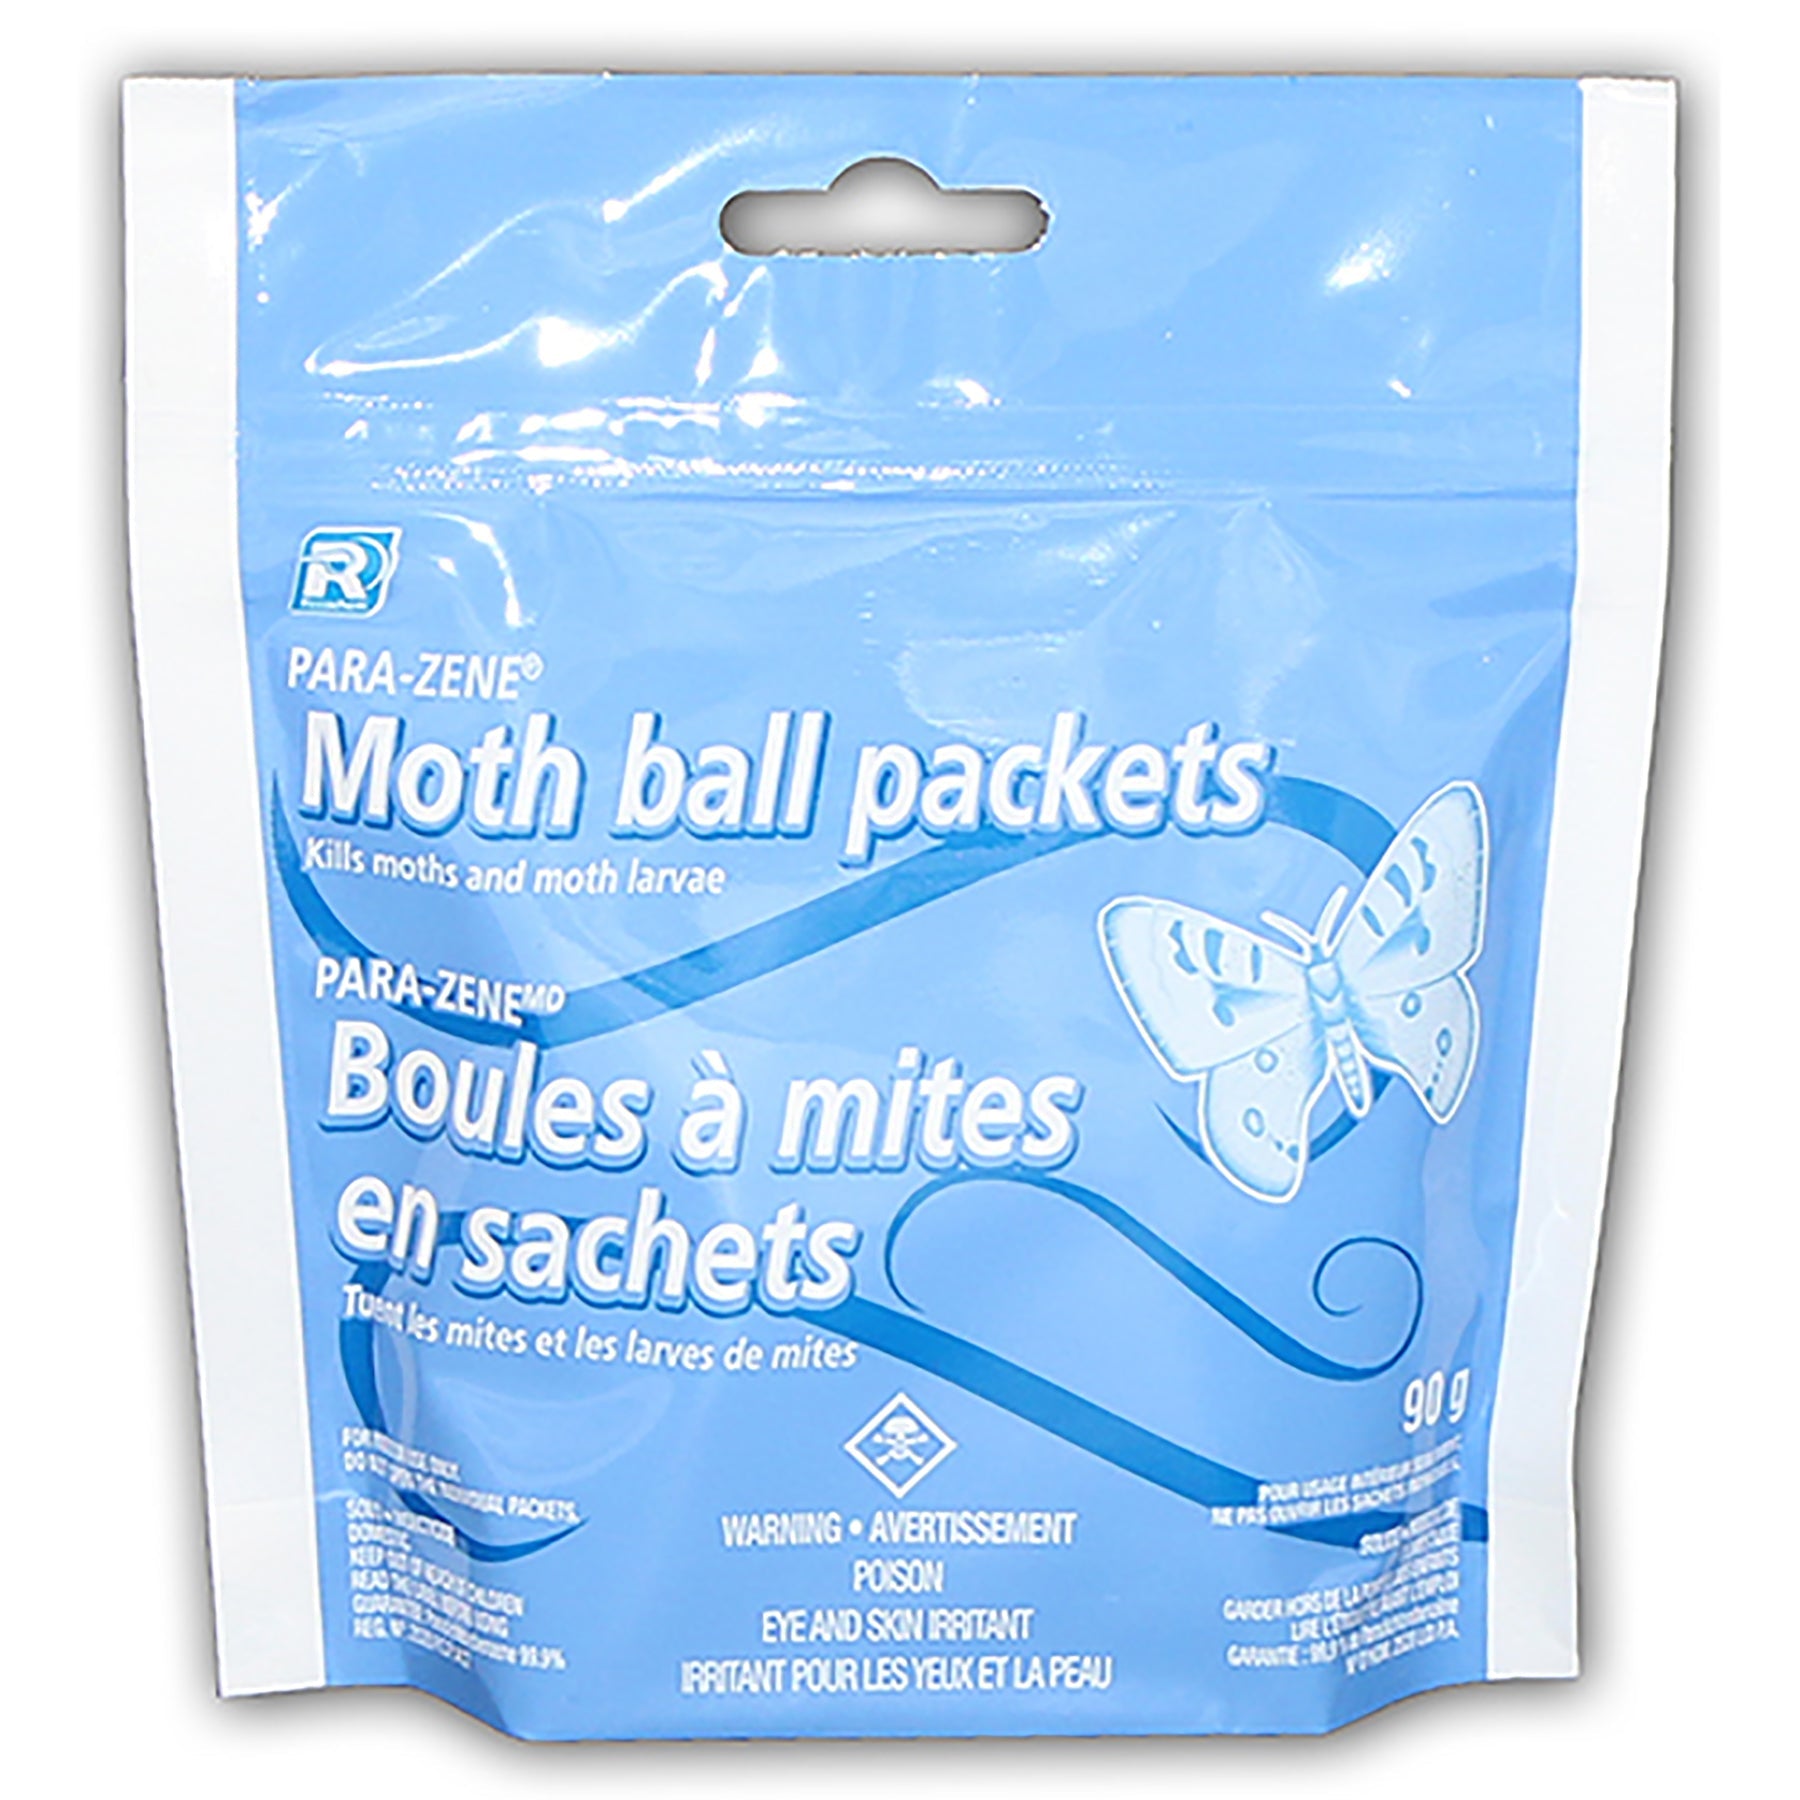 Para-Zene Moth Balls Packets 3.17oz